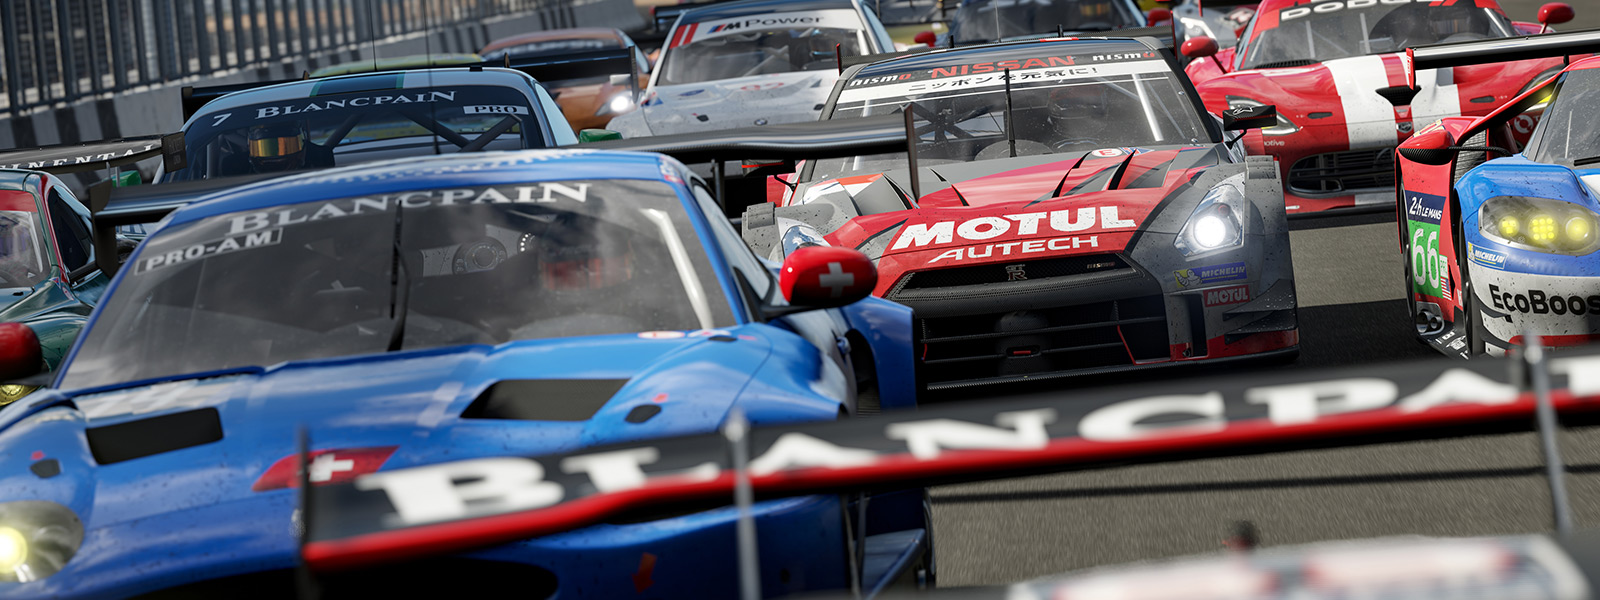 Vue avant de la ligne de départ d’une course Forza dans le jeu Forza Motorsport 7